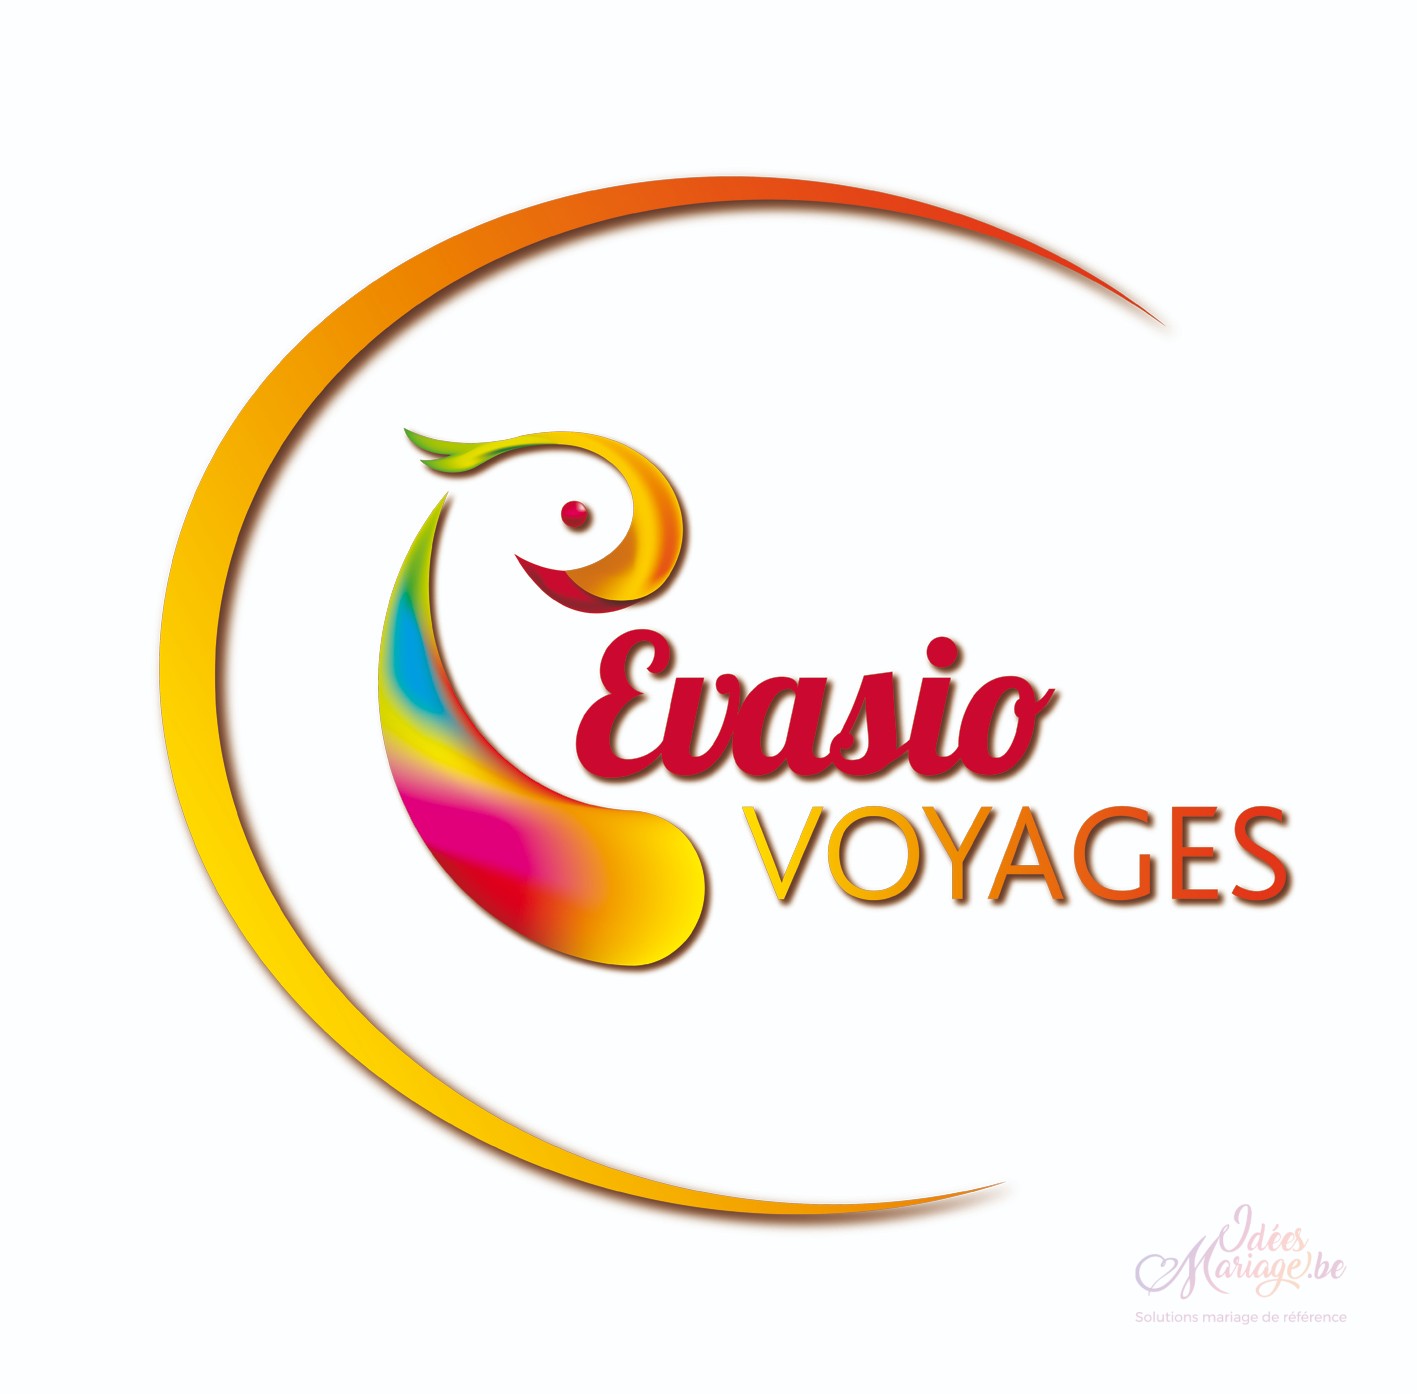 Evasio Voyages